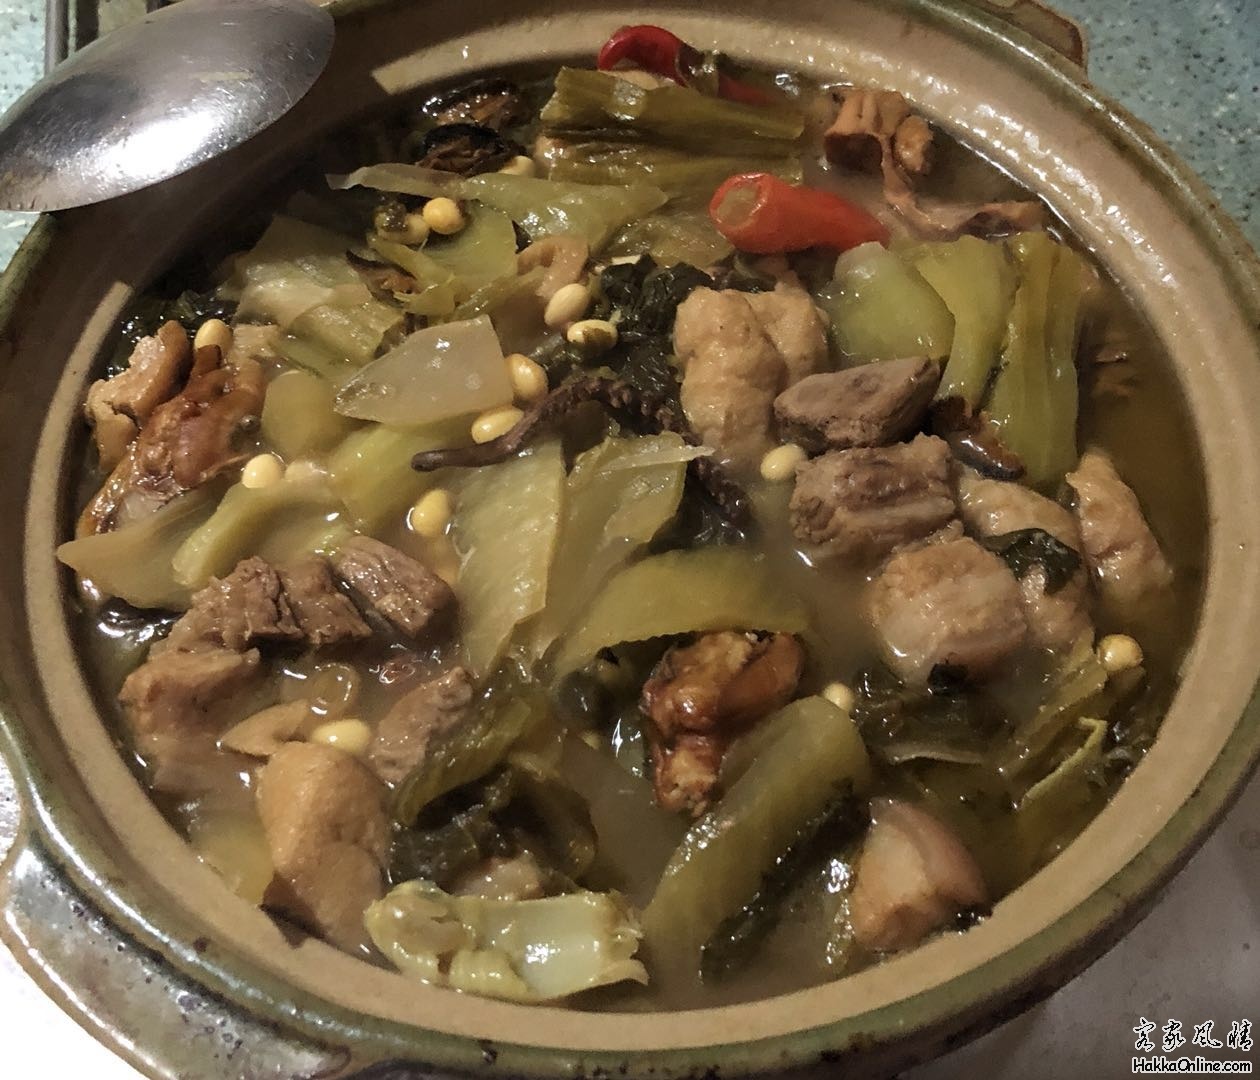 大乾蠔潮州咸菜尤魚絲五花肉加黃豆與油豆腐薄。配芥菜。2